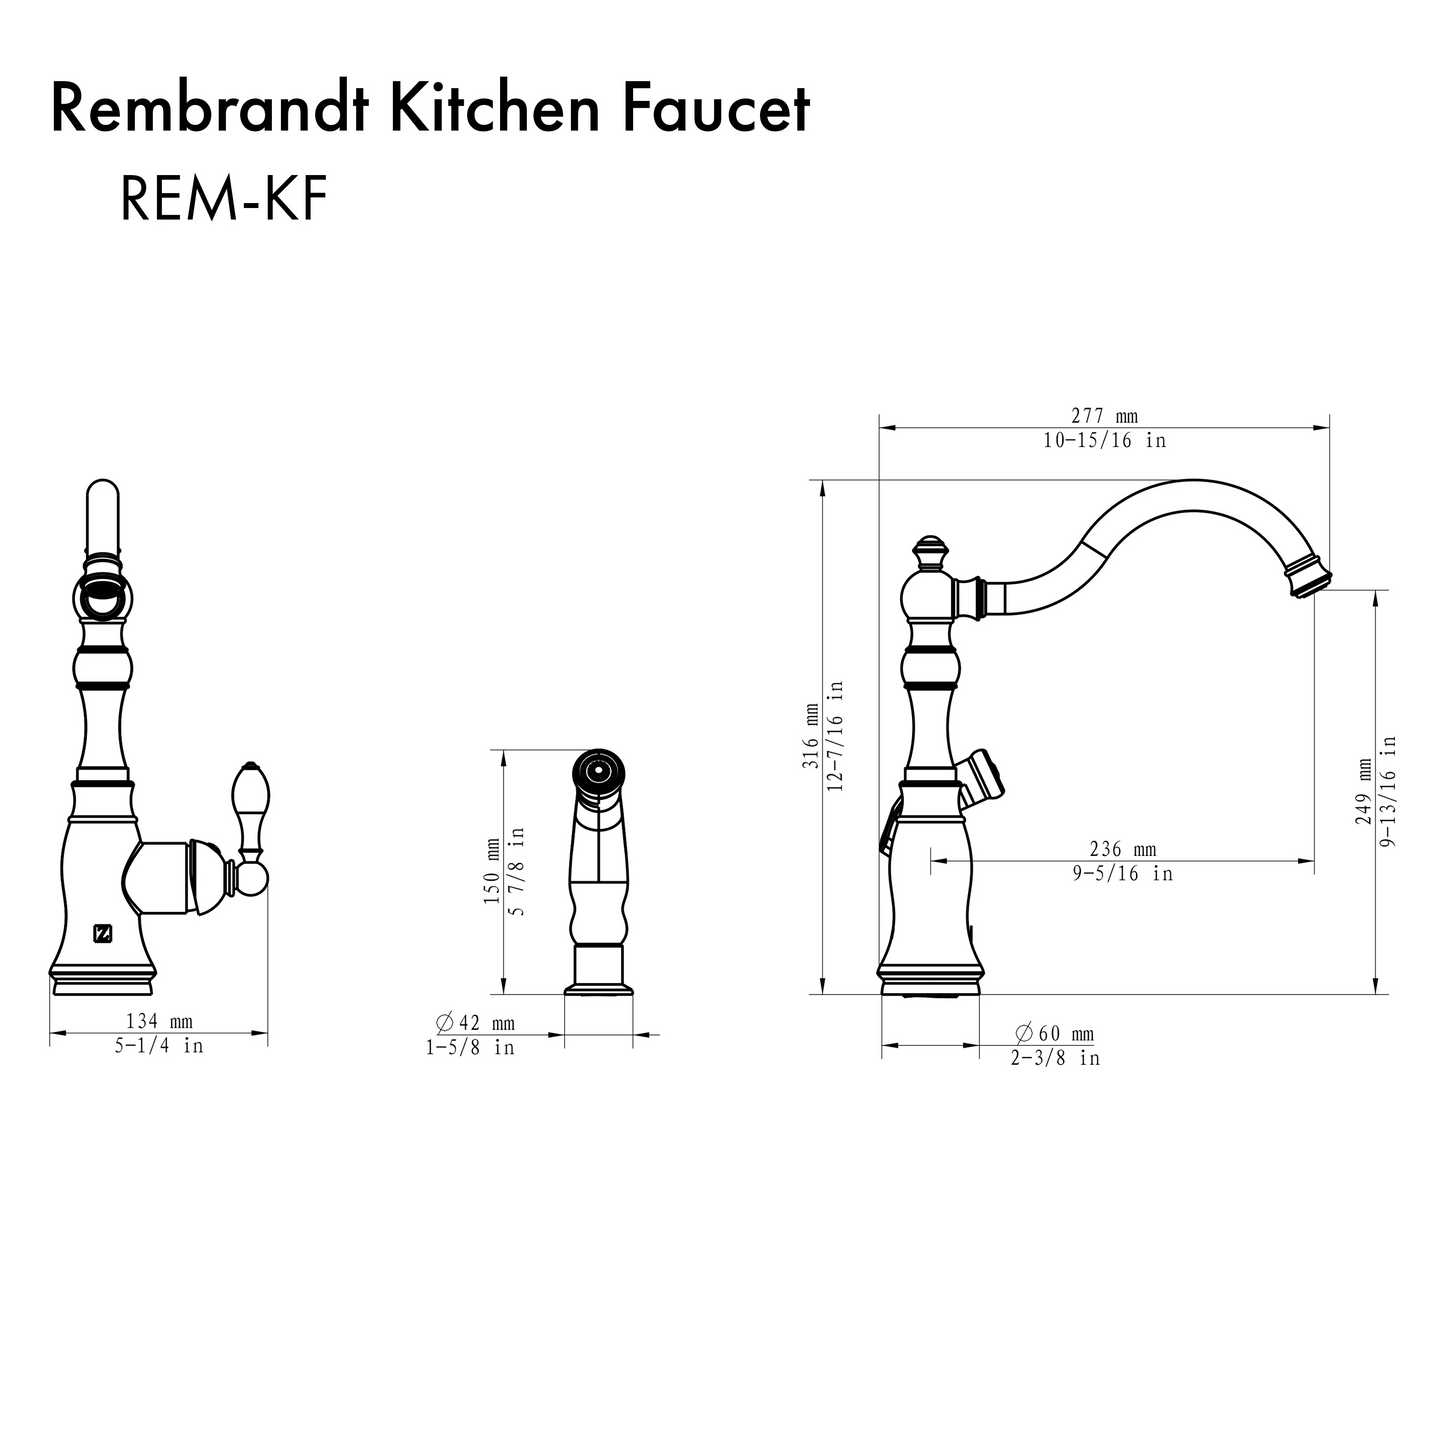 ZLINE Rembrandt Kitchen Faucet in Brushed Nickel (REM-KF-BN)